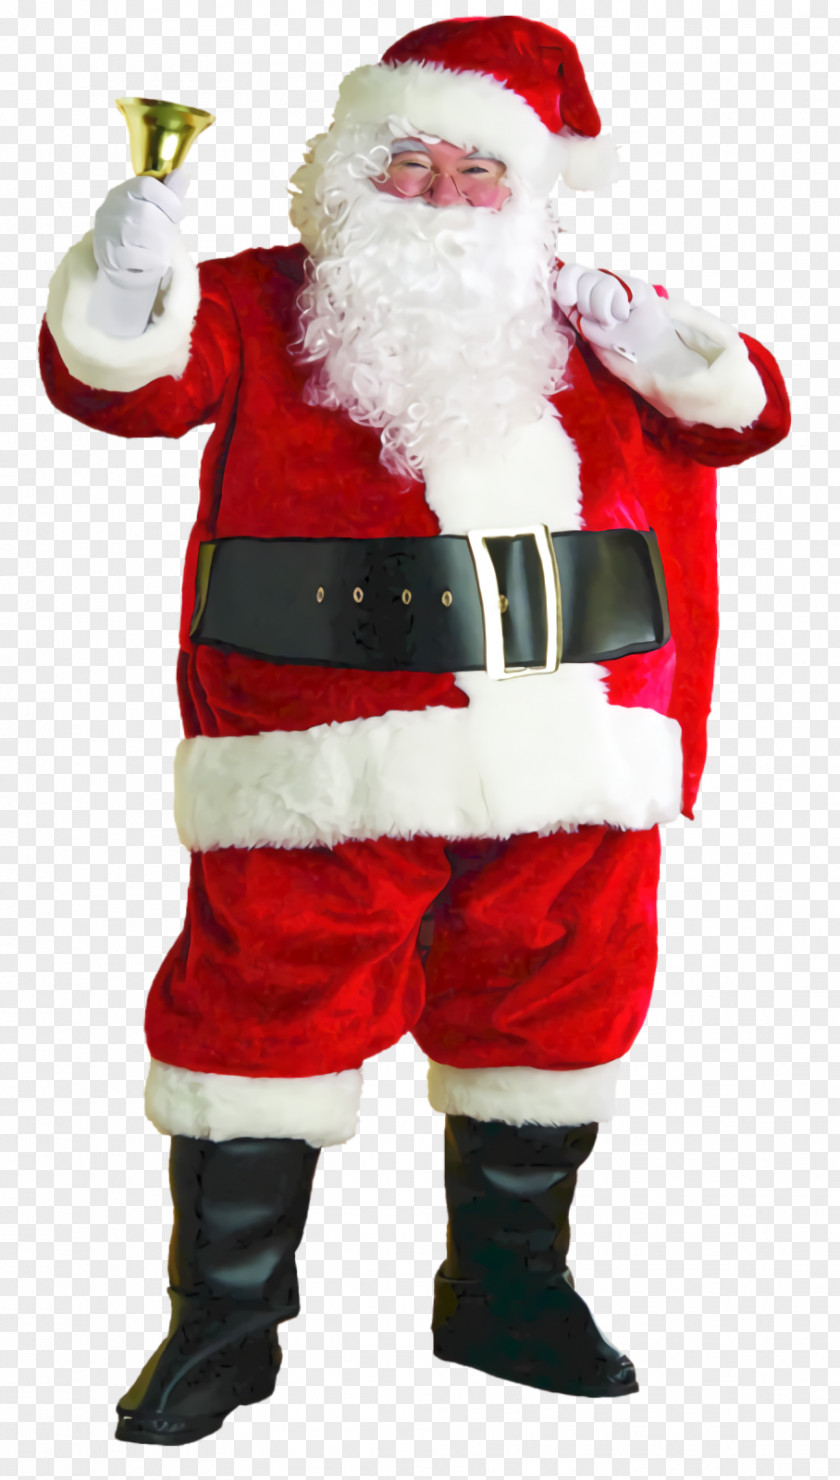 Decorative Nutcracker Christmas Decoration Santa Claus Saint Nicholas PNG